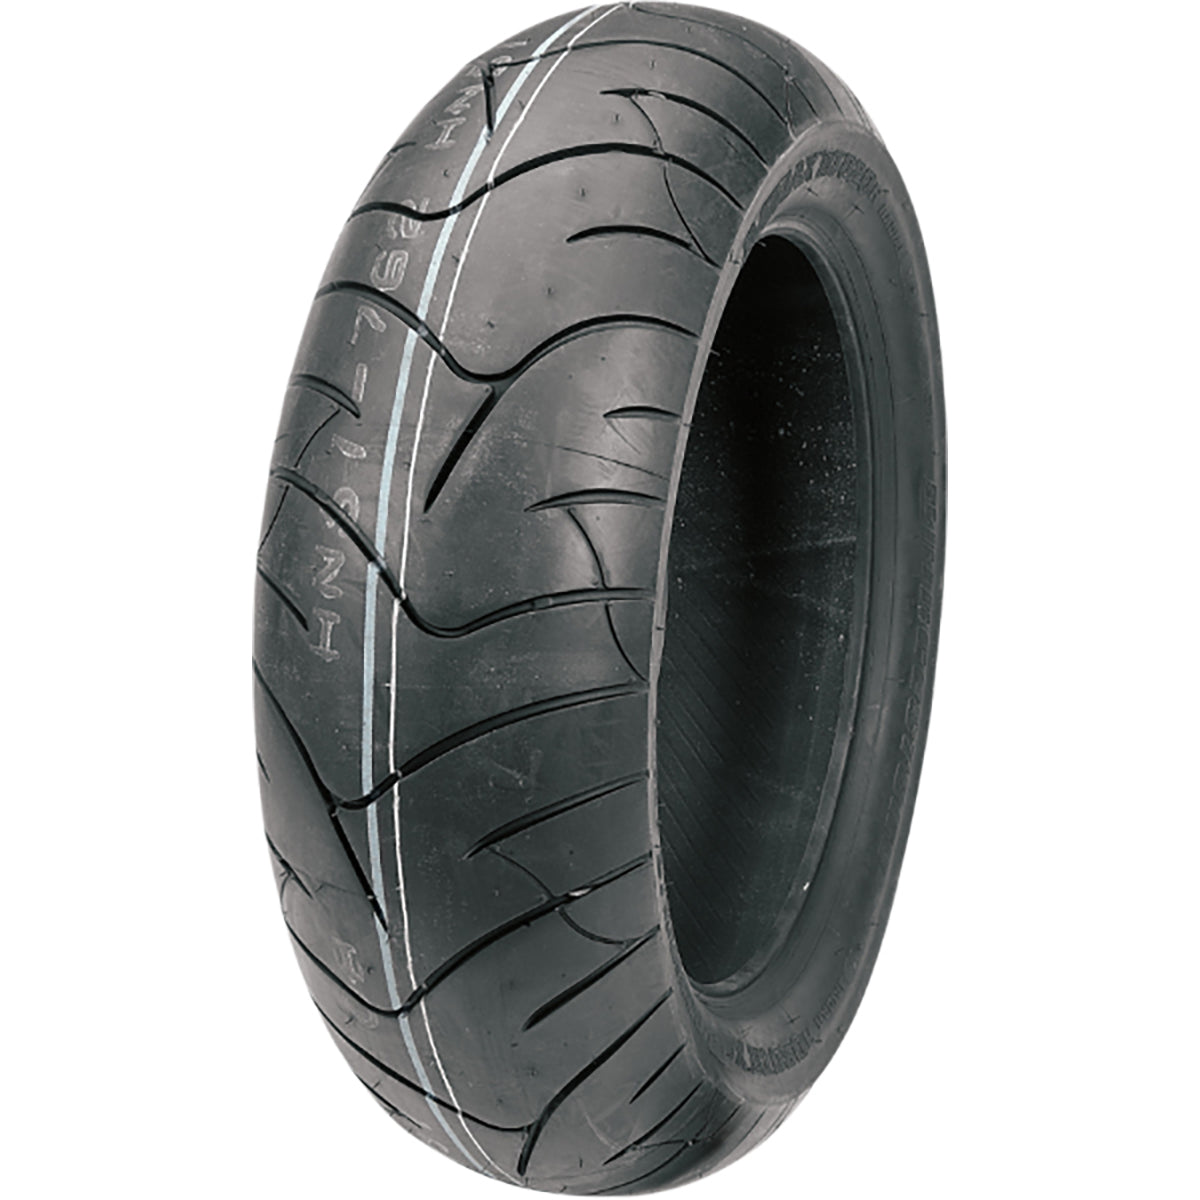 Bridgestone Battlax BT-020 16" Rear Street Tires